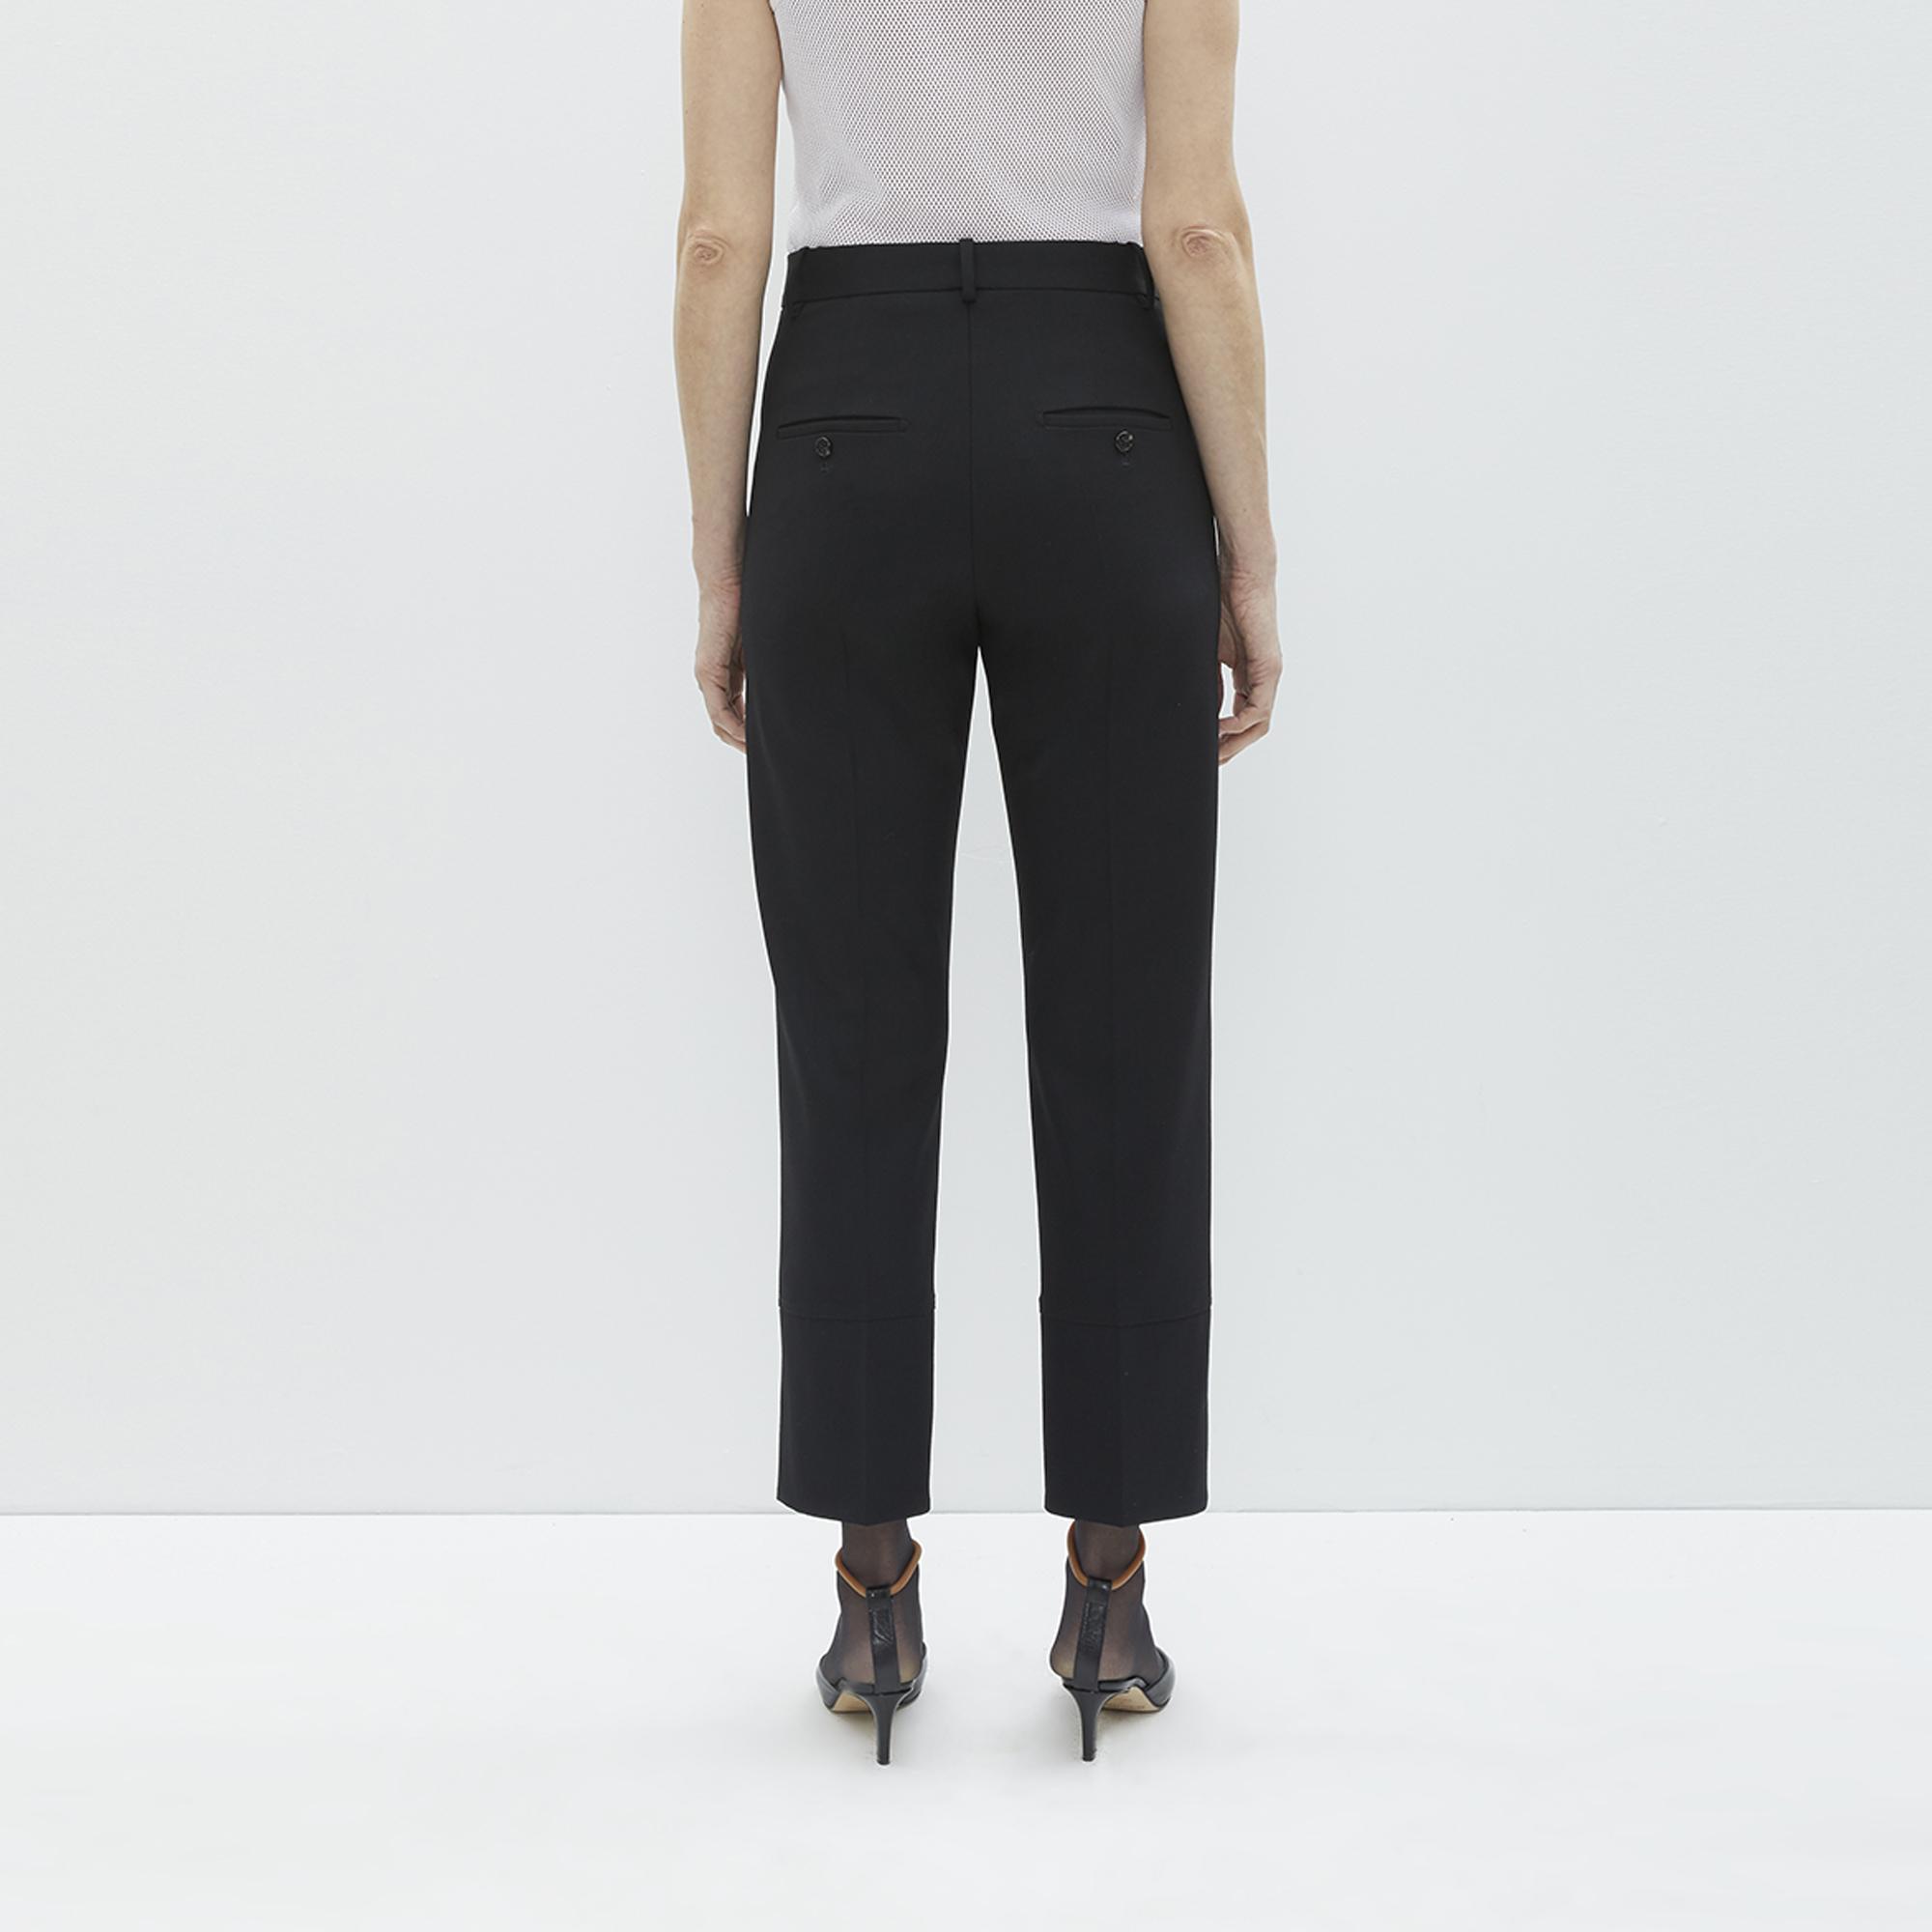 Helmut Lang Black Front Slit Suit Pants | WWW.HELMUTLANG.COM